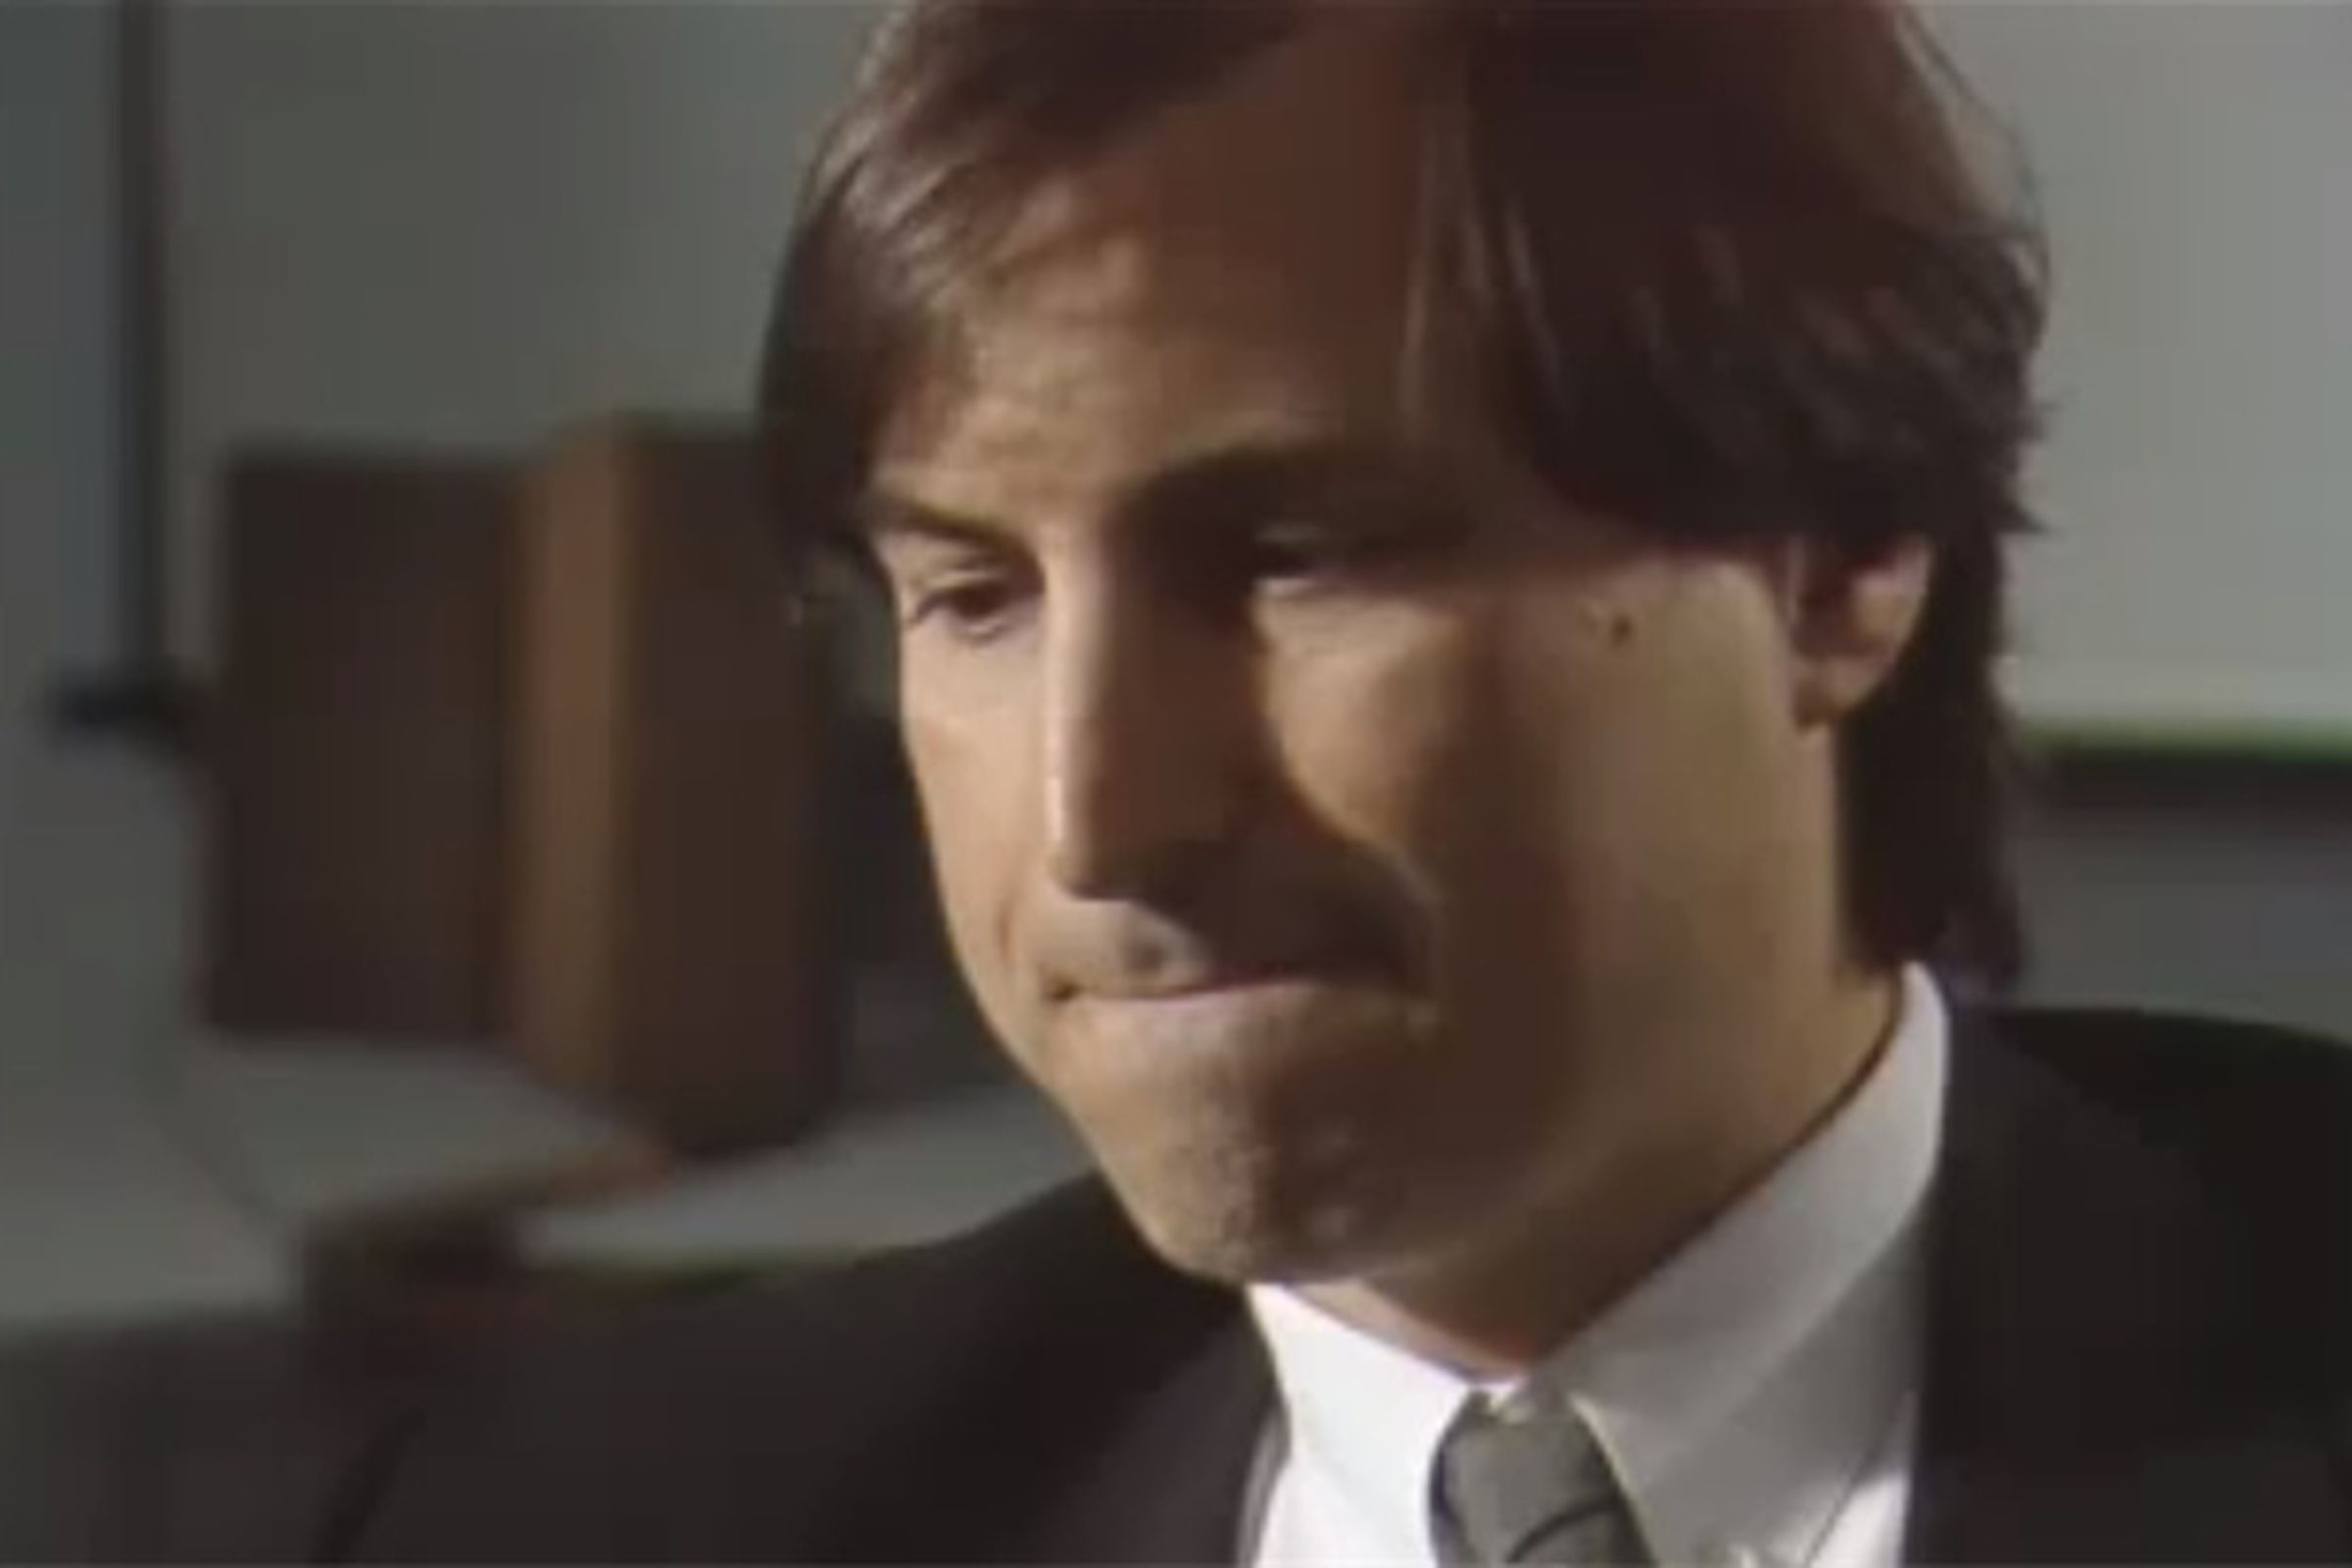 Steve Jobs 1990 interview